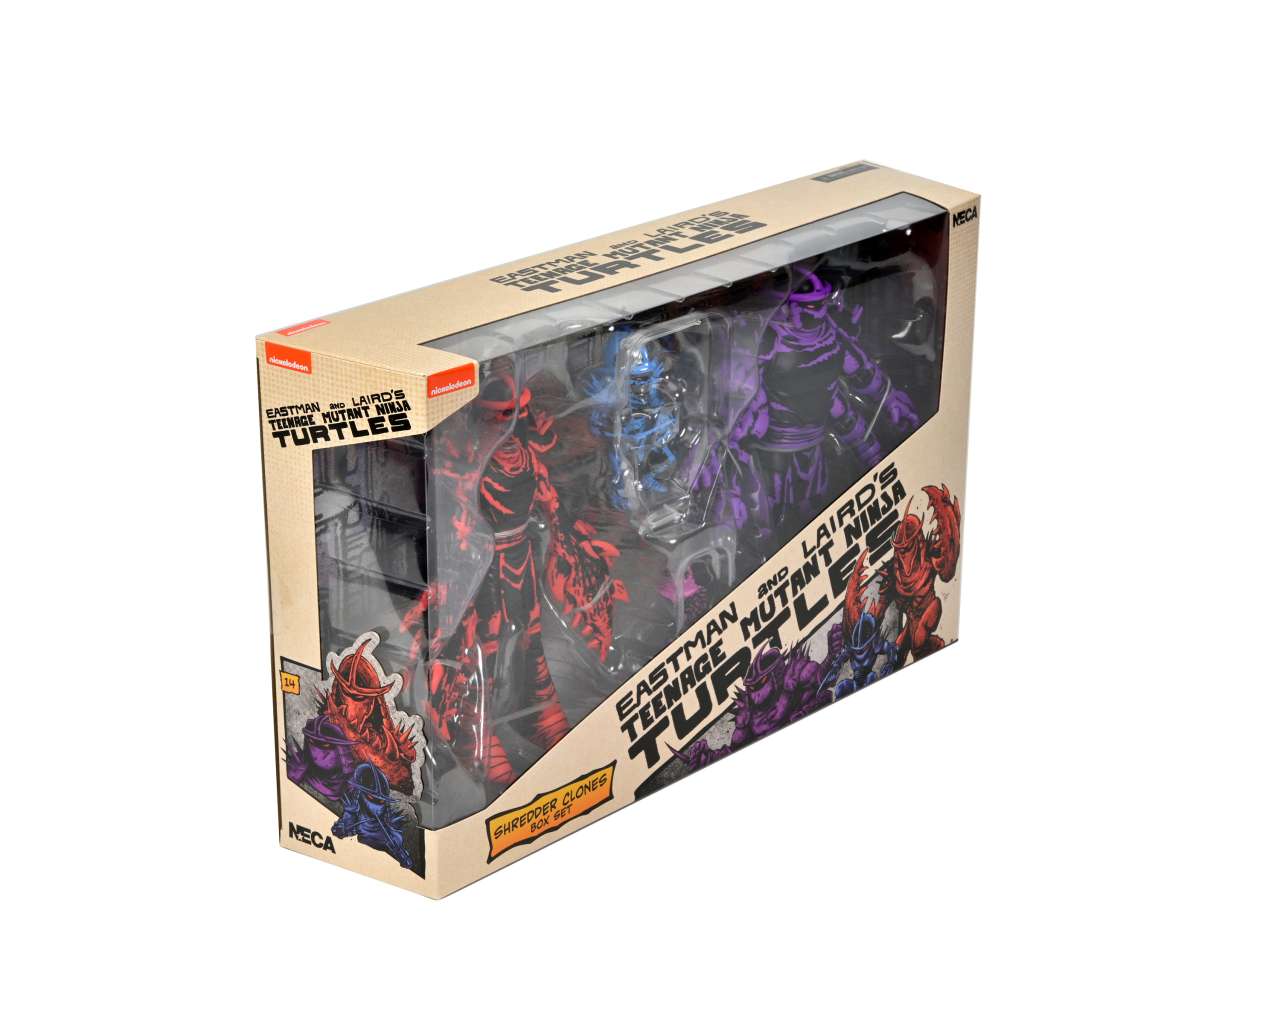 Shredder Clones Neca Tmnt Mirage Shredder Clones Box Set fig.